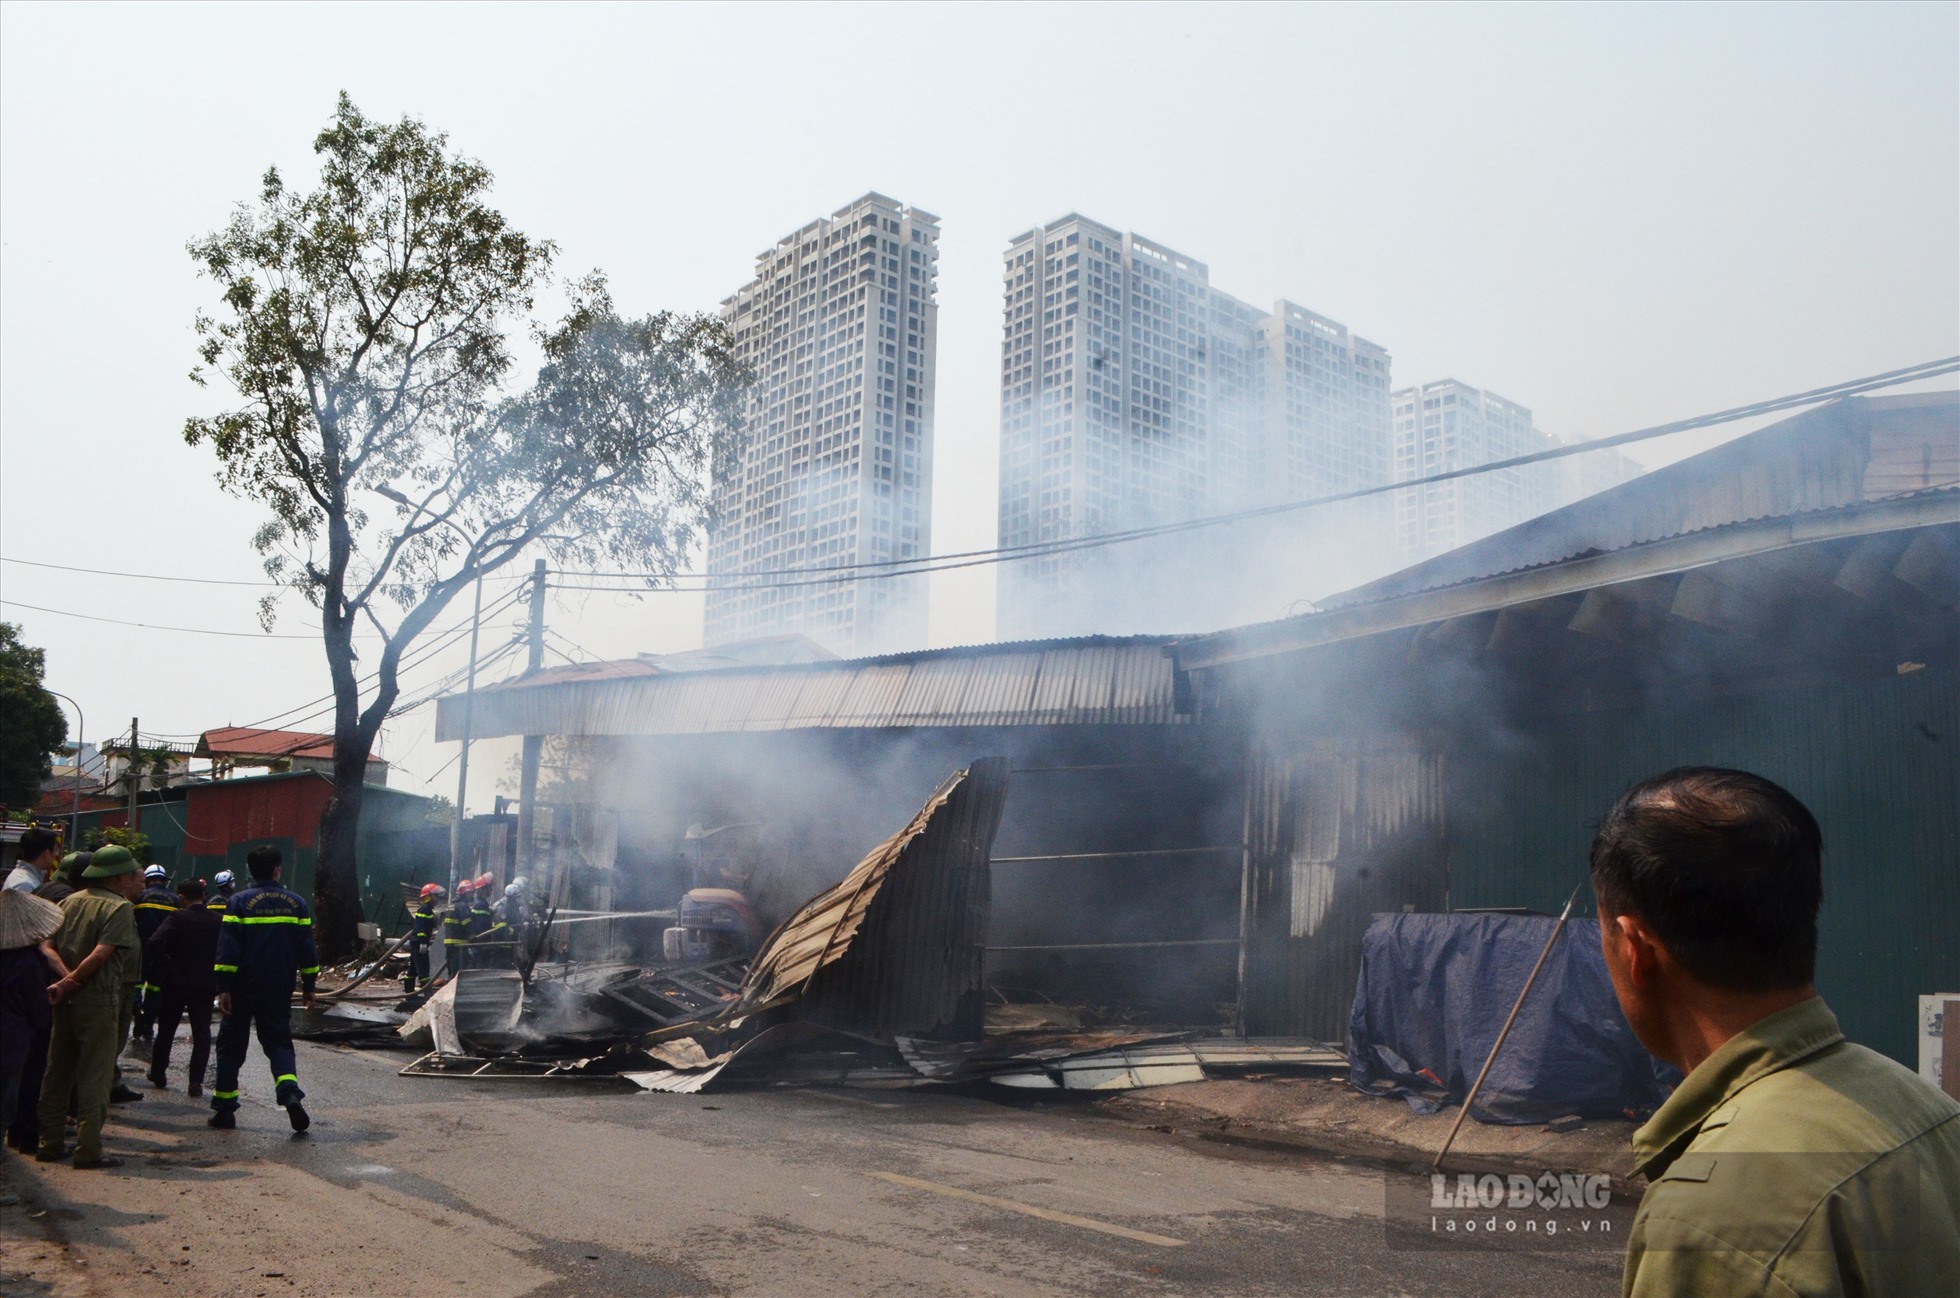 Thông tin ban đầu, khoảng hơn 12h trưa ngày 14.3, ngọn lửa bất ngờ bùng phát tại một xưởng gỗ trên đường Hữu Hưng, phường Tây Mỗ (Nam Từ Liêm, TP Hà Nội), cạnh một cây xăng Petrolimex.